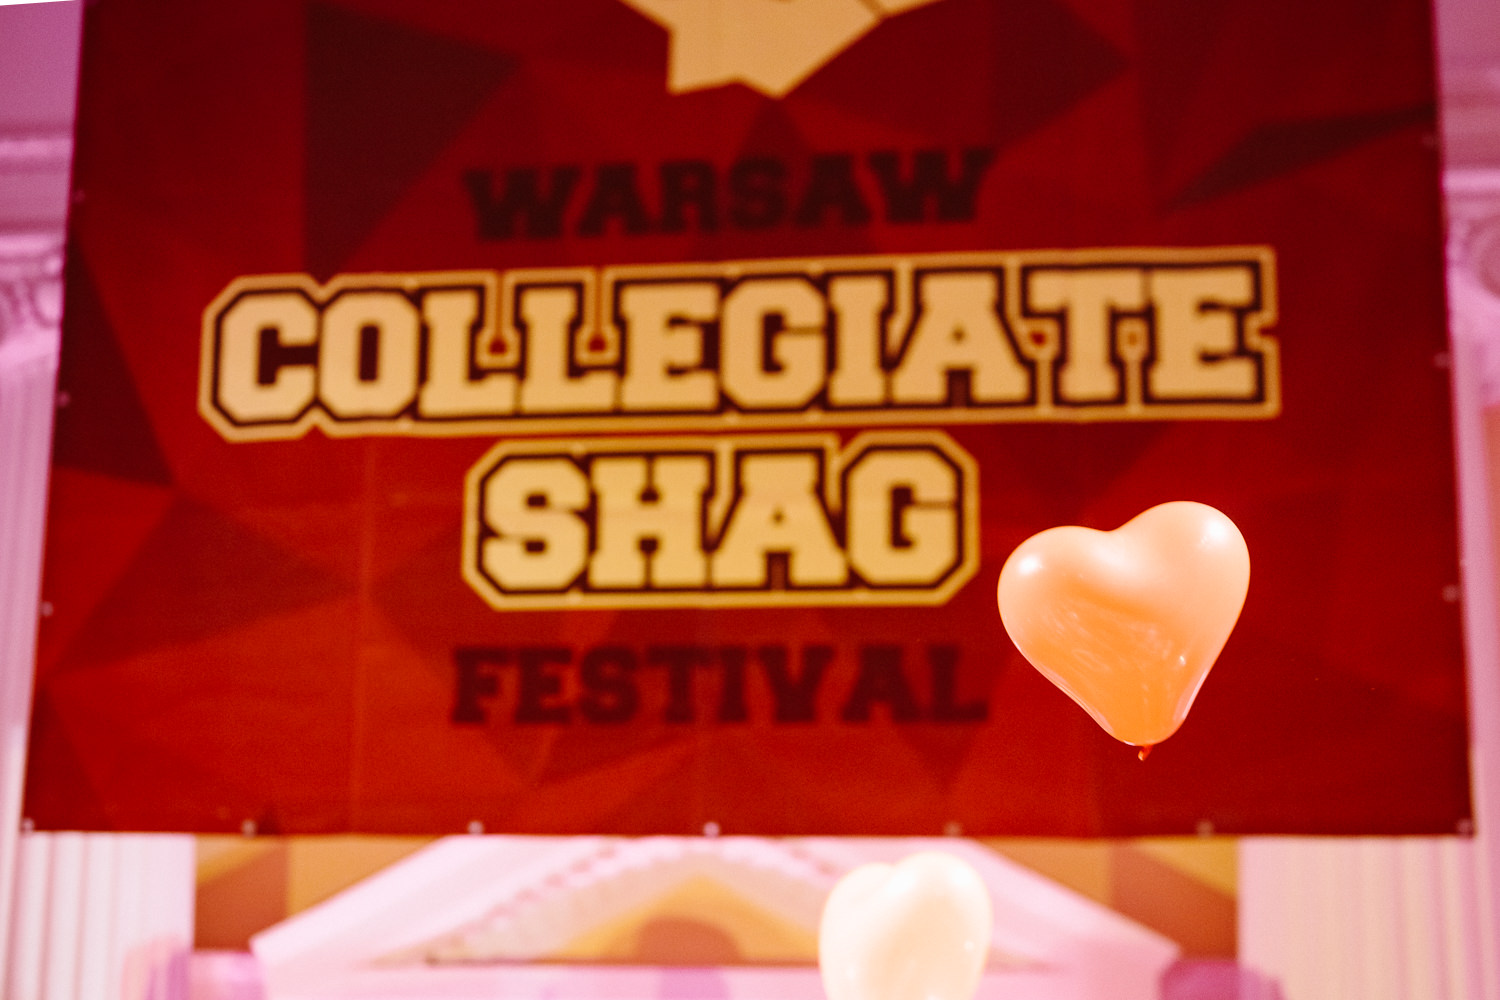  Warsaw Collegiate Shag Festival 2019: http://warsawshag.com/en. Photo: www.fb.me/photosForDancersOnly - http://www.ebobrie.com/warsaw-collegiate-shag-festival-2019 